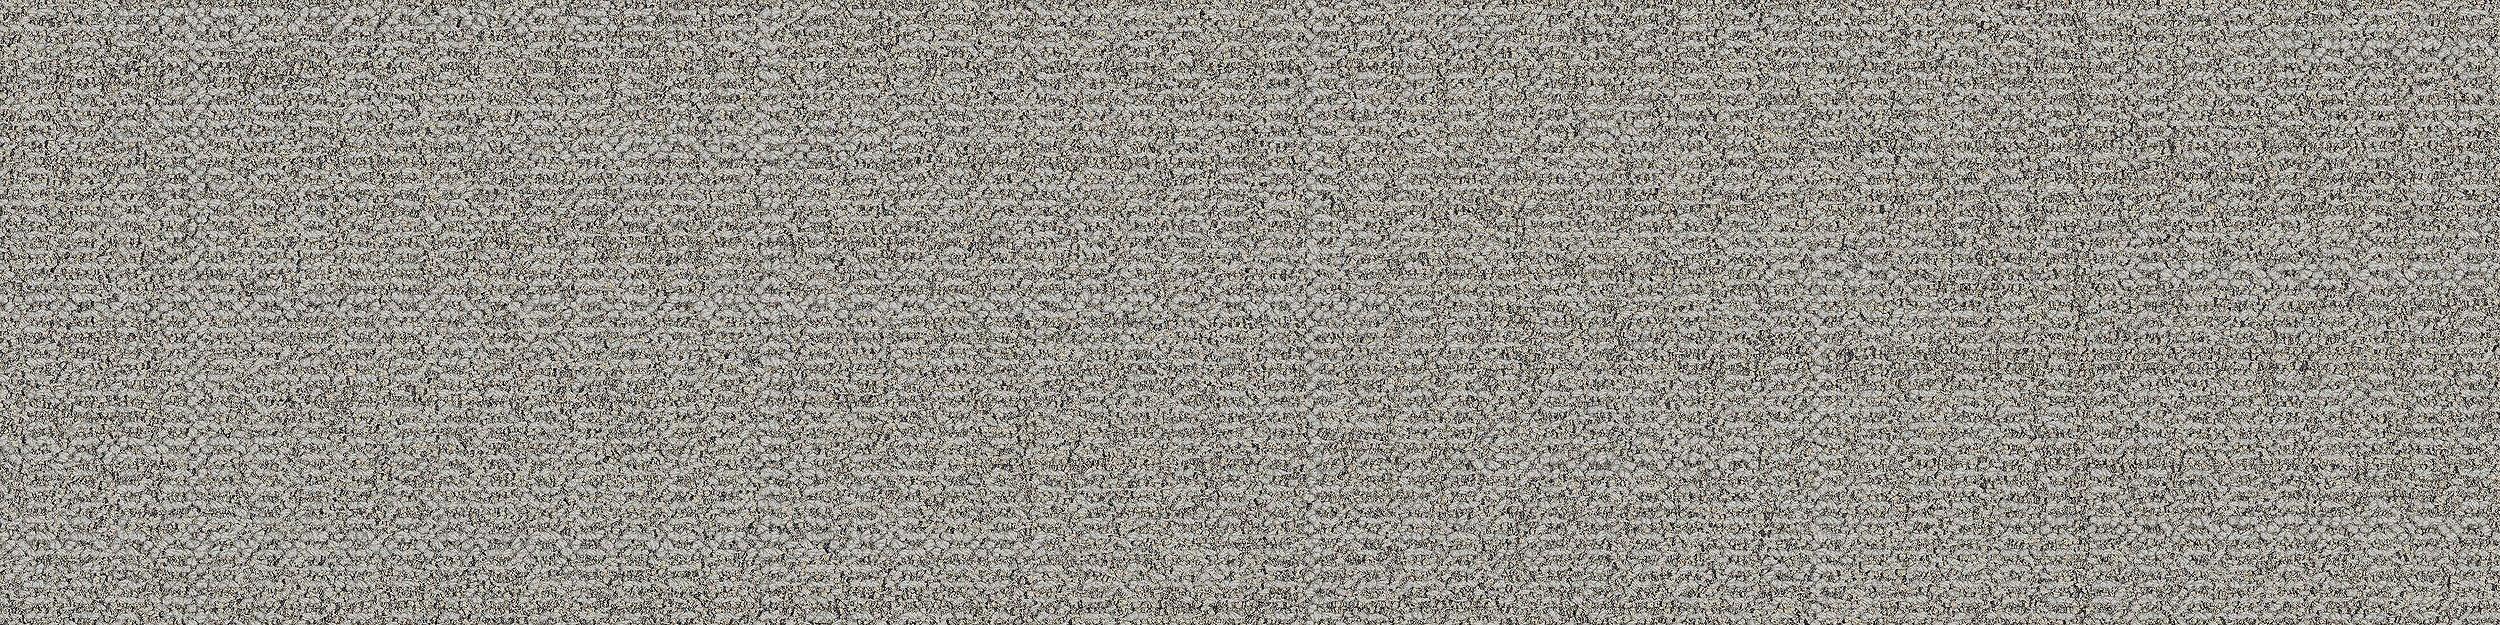 Open Air 401 Carpet Tile In Linen afbeeldingnummer 6